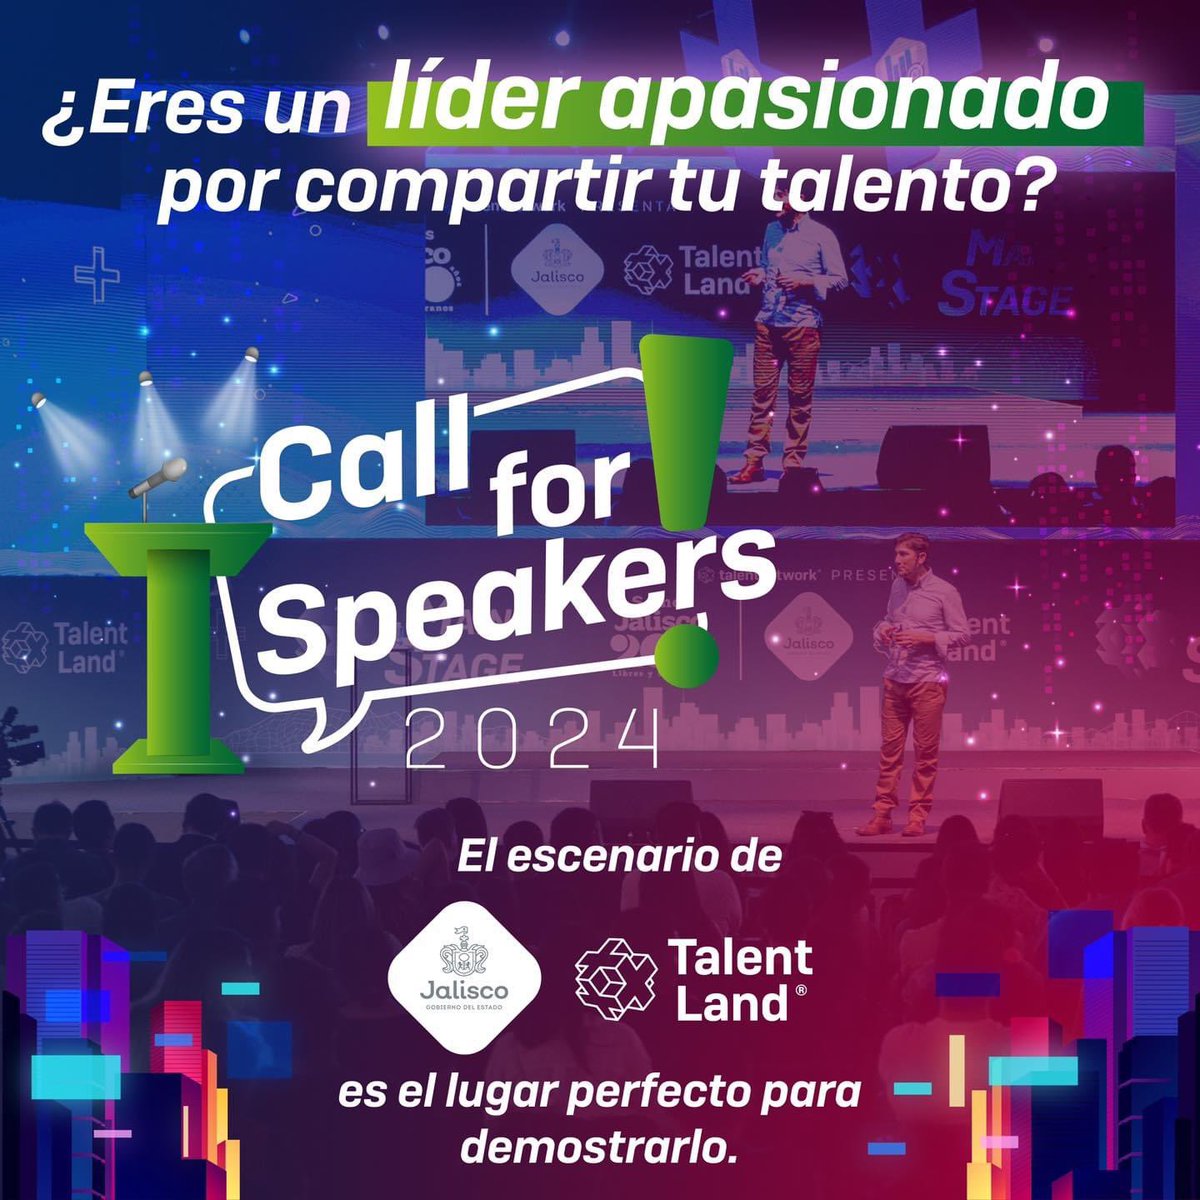 En Talent Land, las grandes ideas se encuentran con los grandes líderes. 🚀Únete a nosotros como speaker en Talent Land 2024.

⭐️Regístrate en nuestra convocatoria talent-land.mx/call-for-speak…

#TalentLand #CallForSpeakers #JaliscoTalentLand2024 #TLand2024